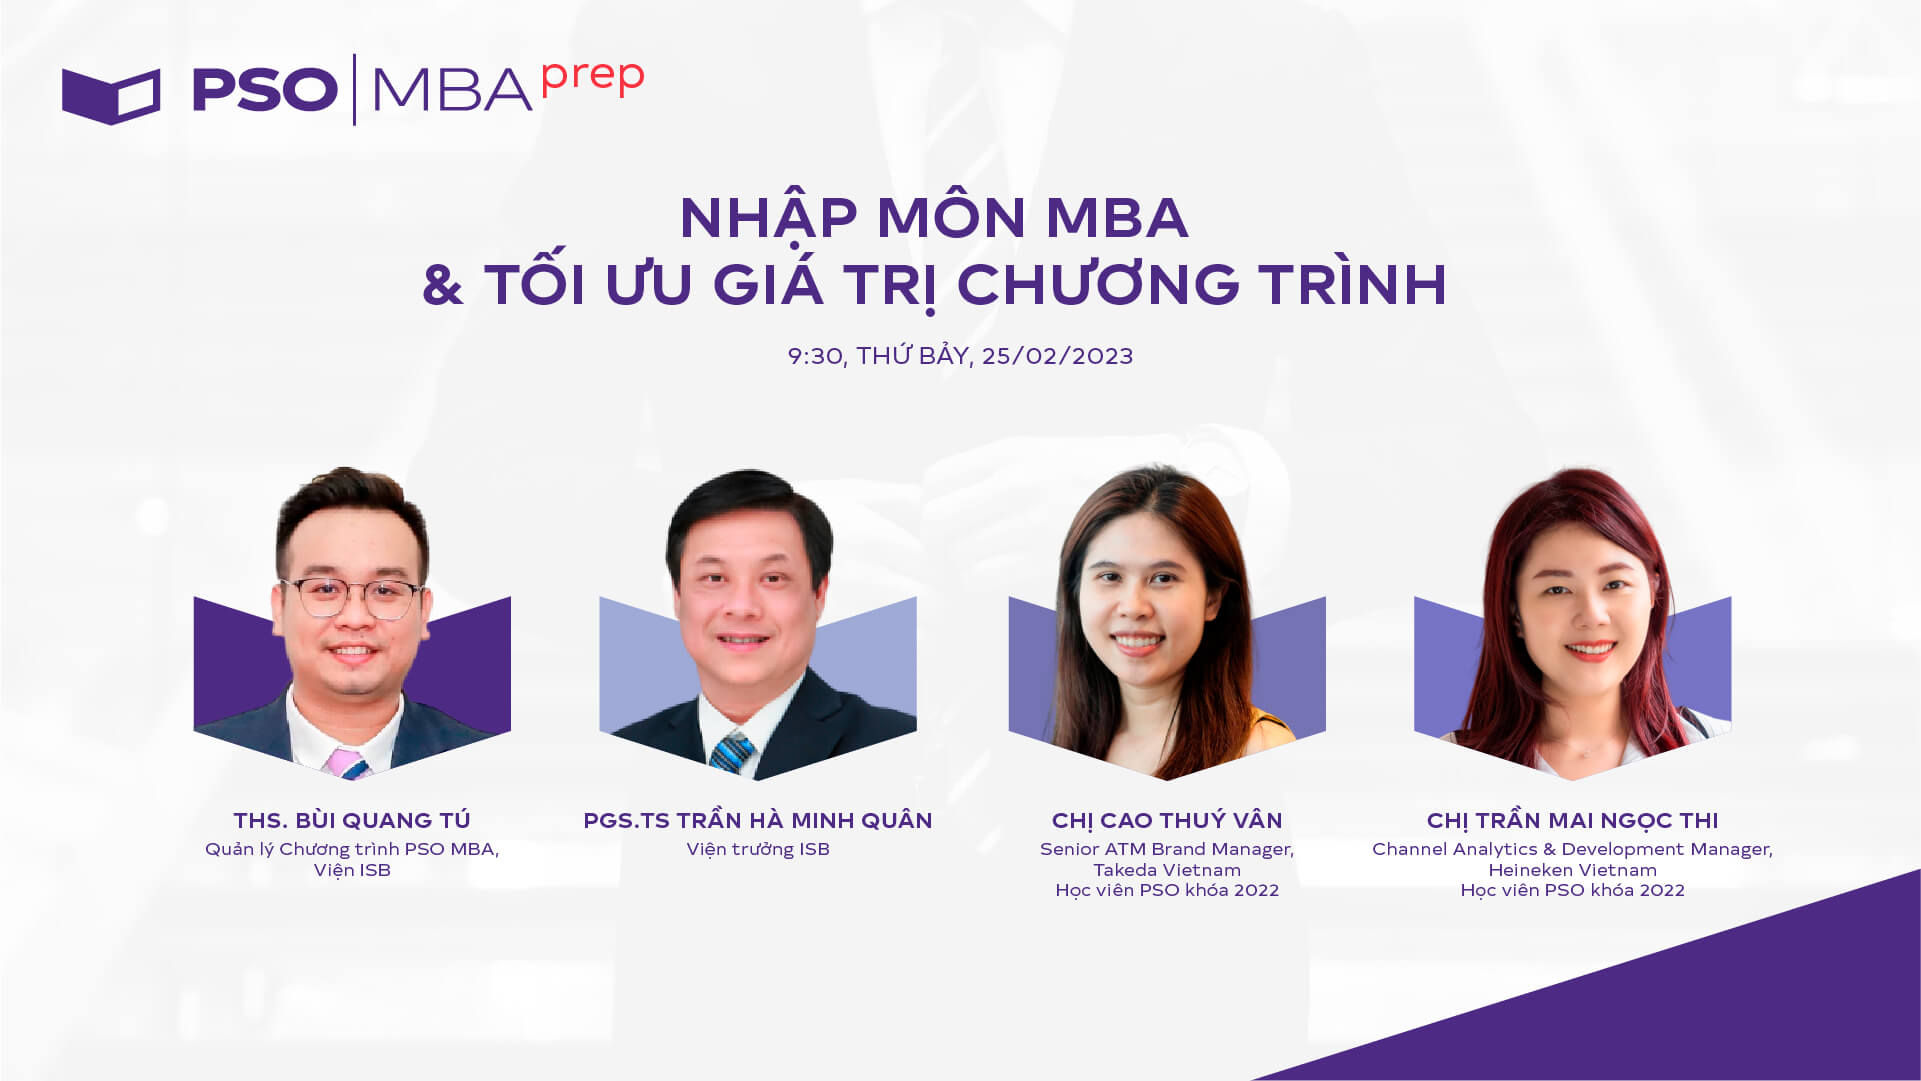 MBA Prep #9: Nhập môn MBA & tối ưu giá trị chương trình